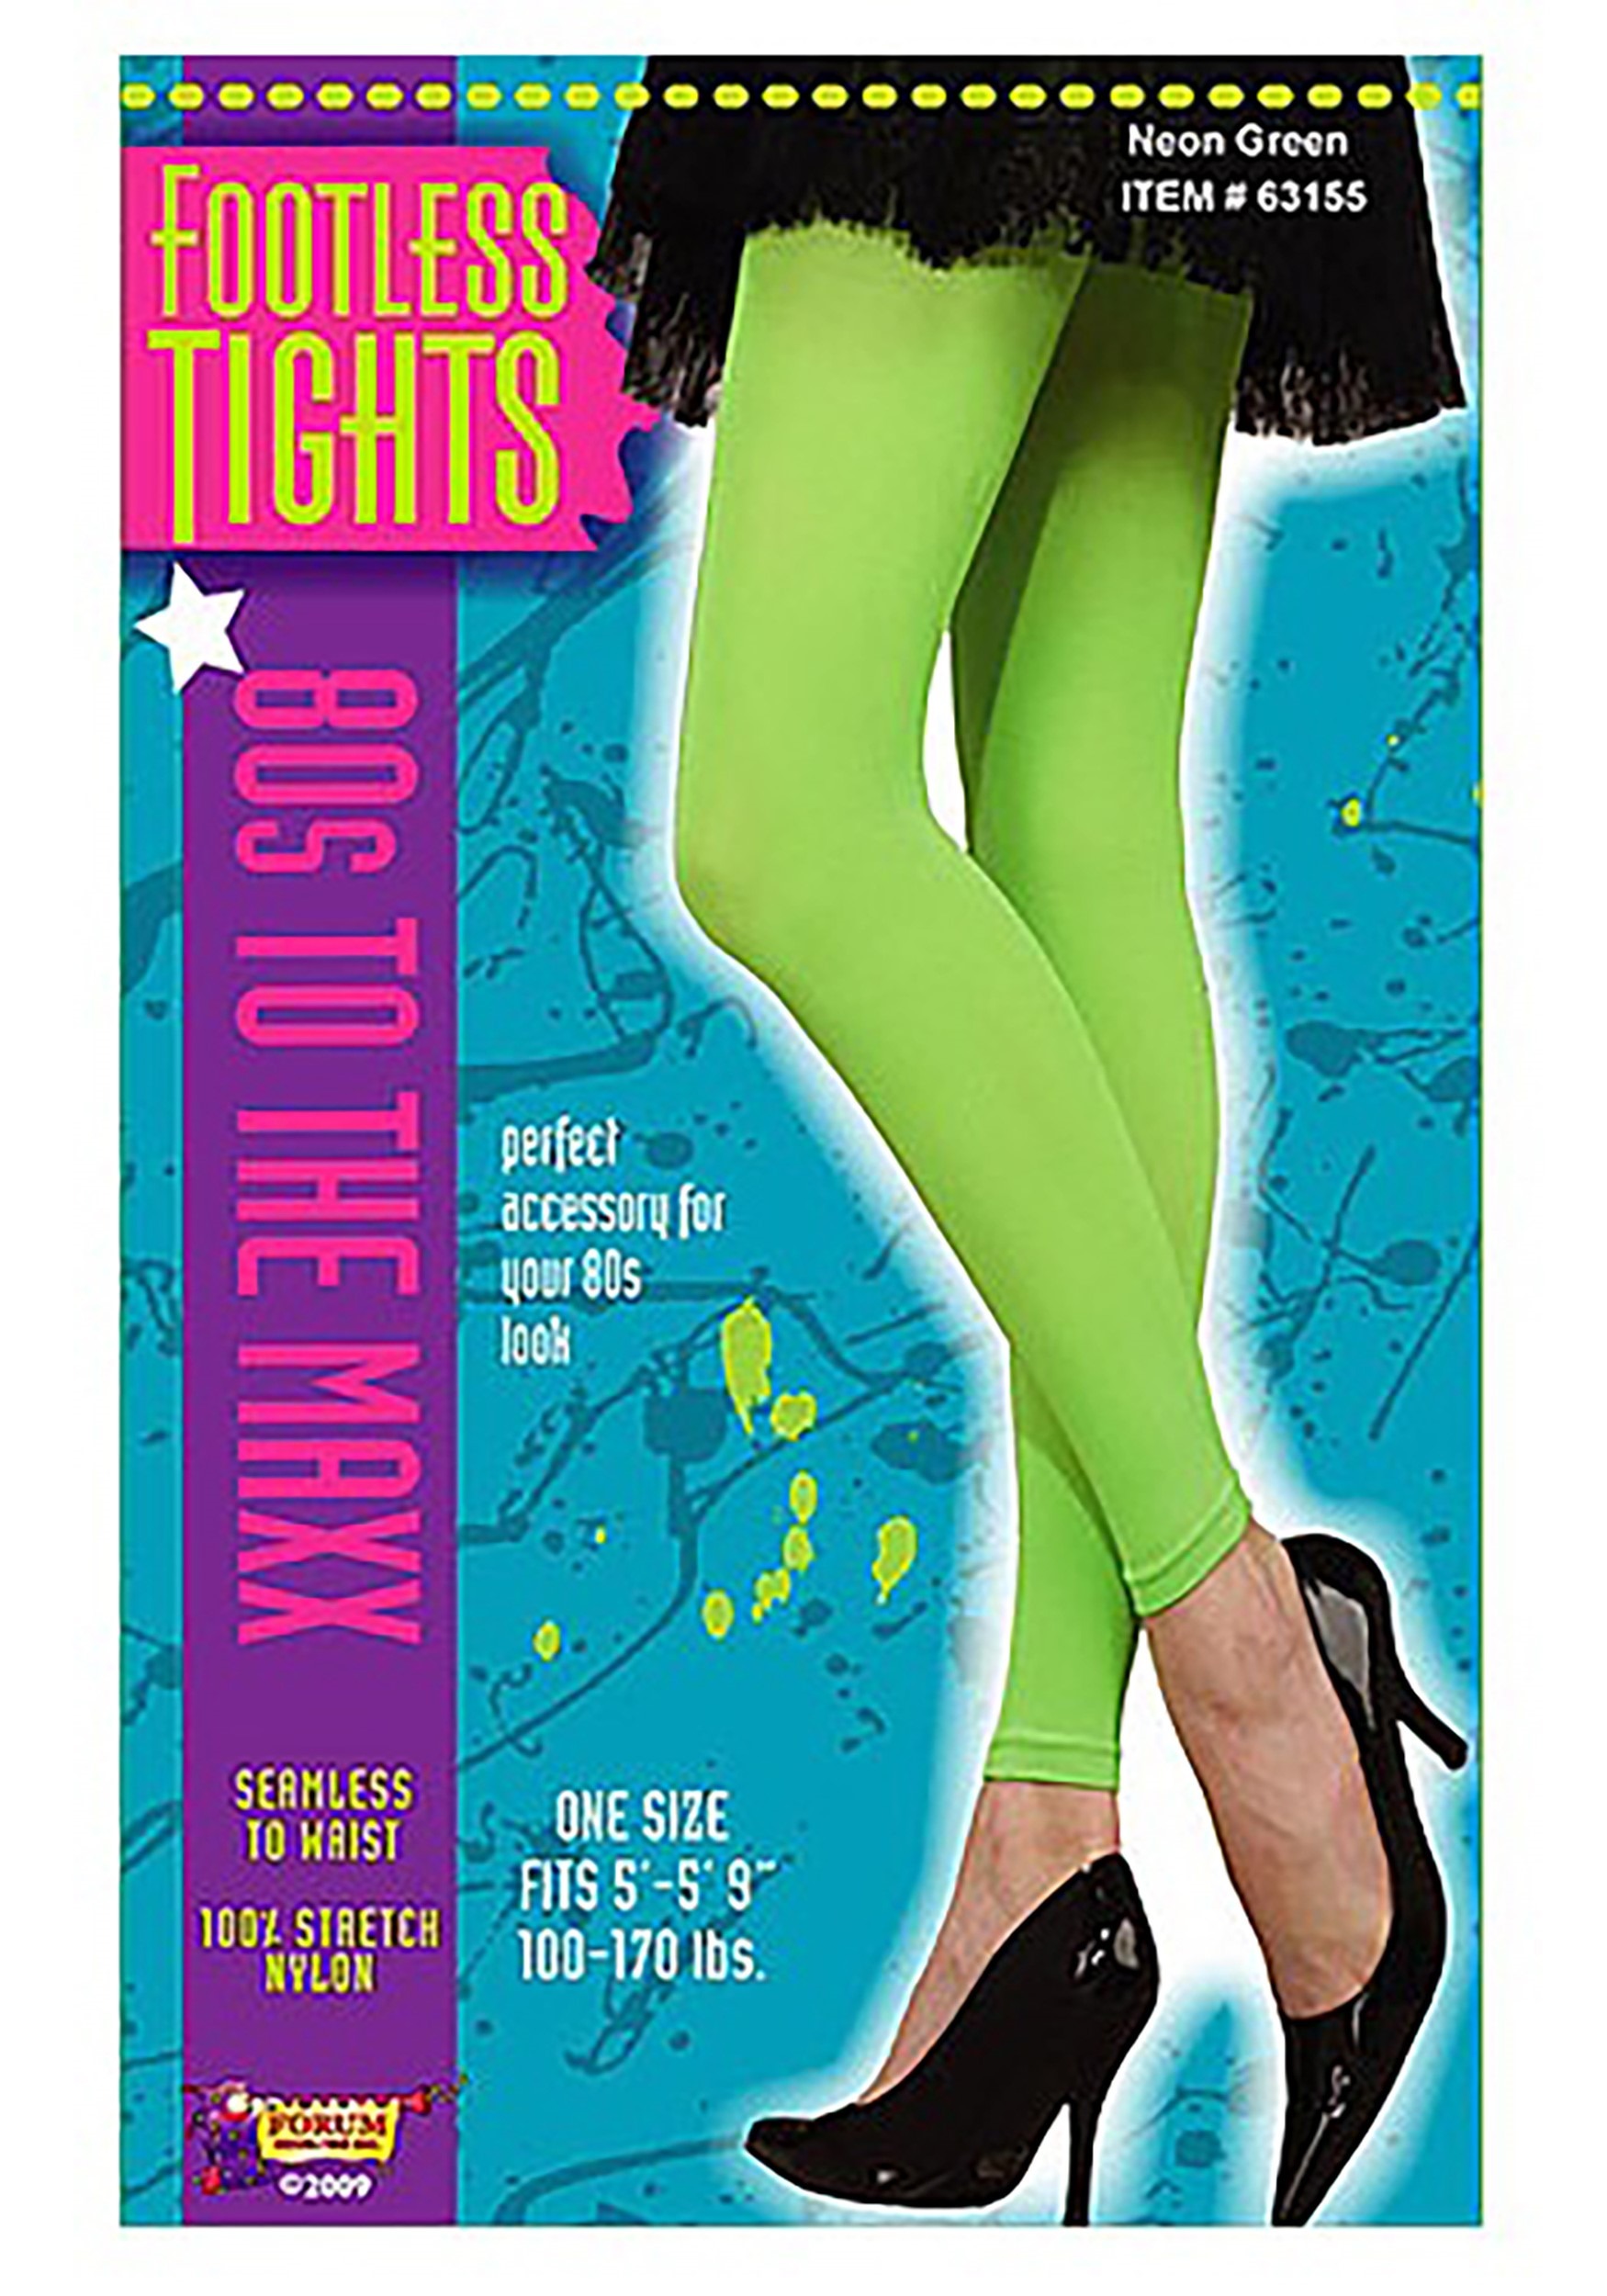 1980s Neon Green Fishnet Stockings